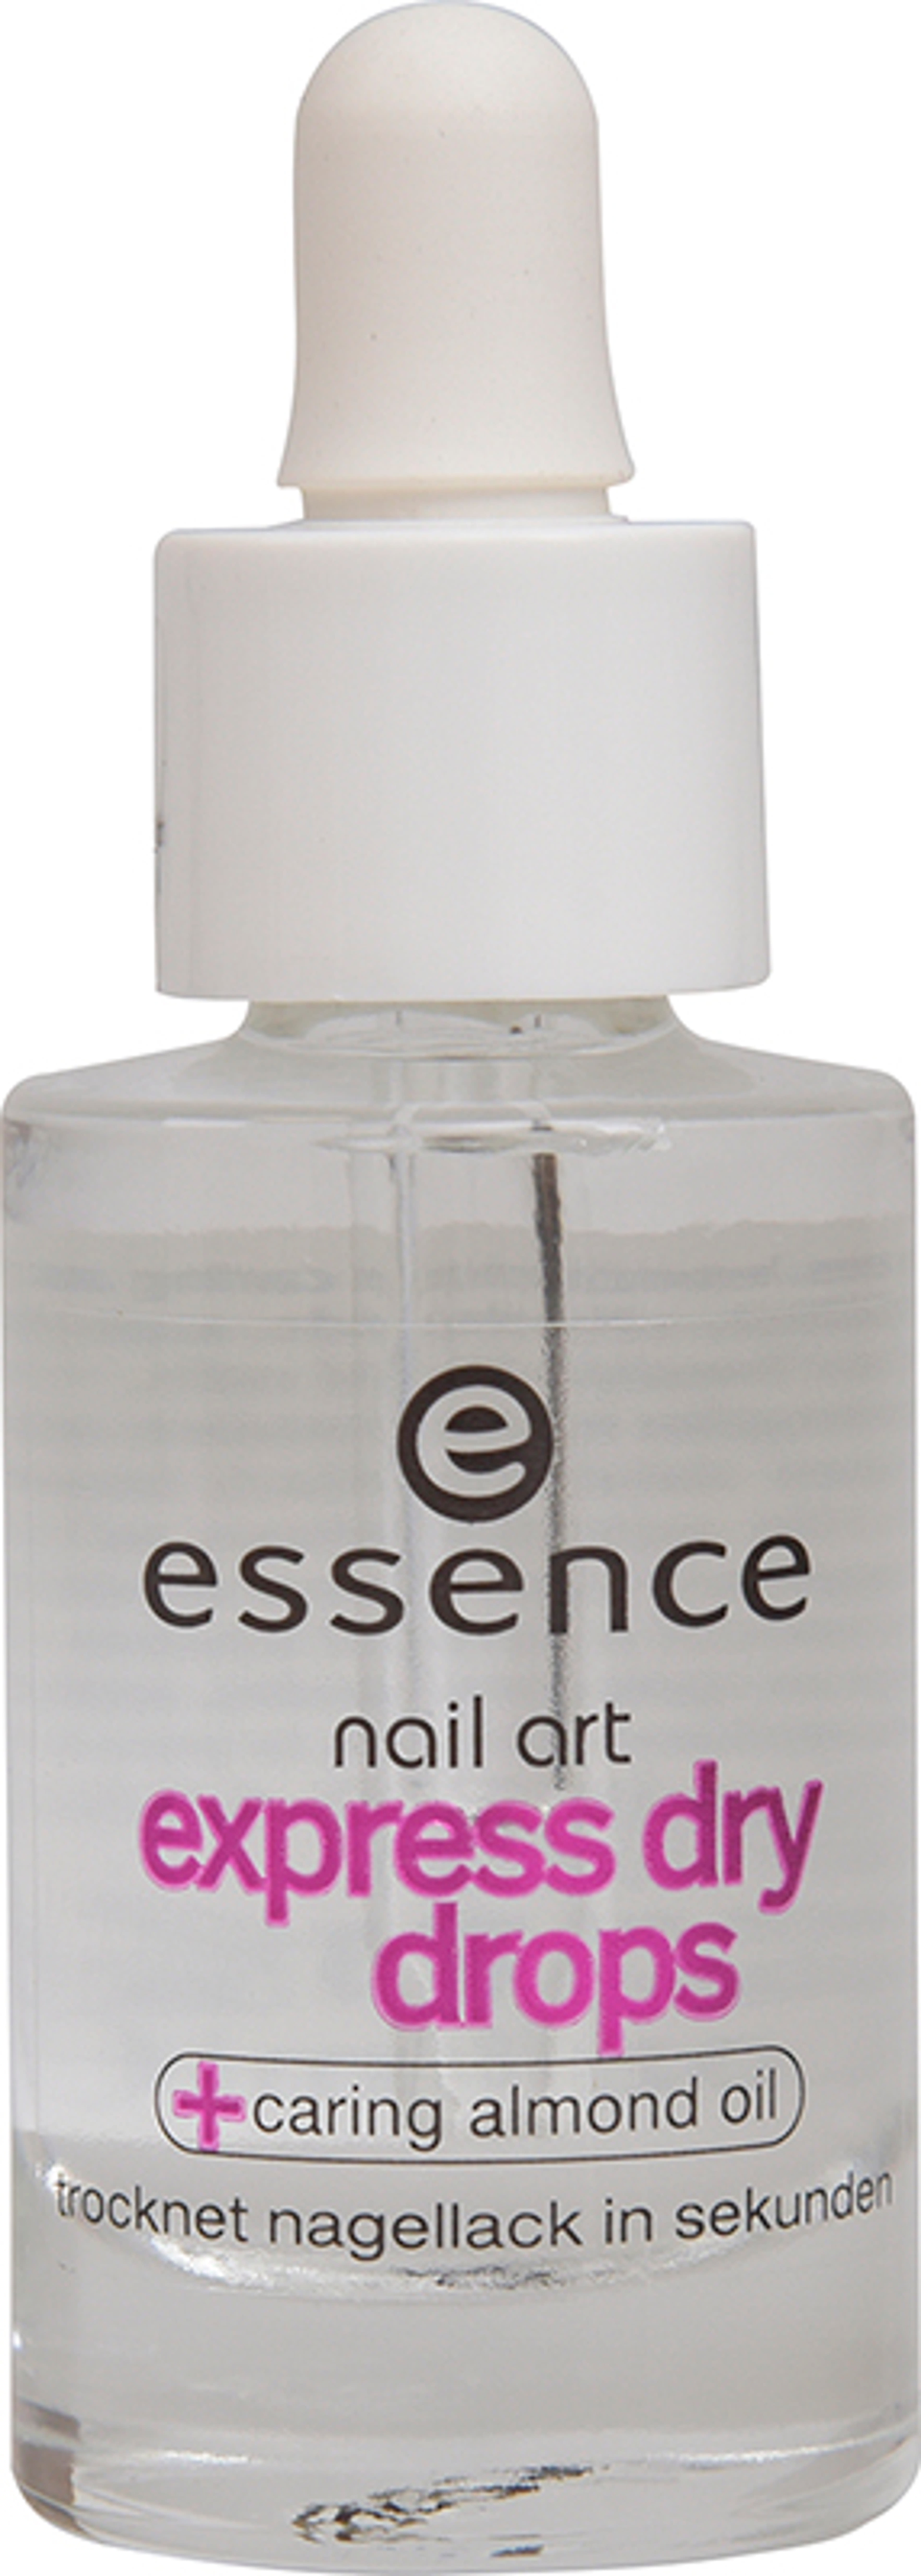 Essence Express Dry Drops körömlakk szárító - 8 ml-1